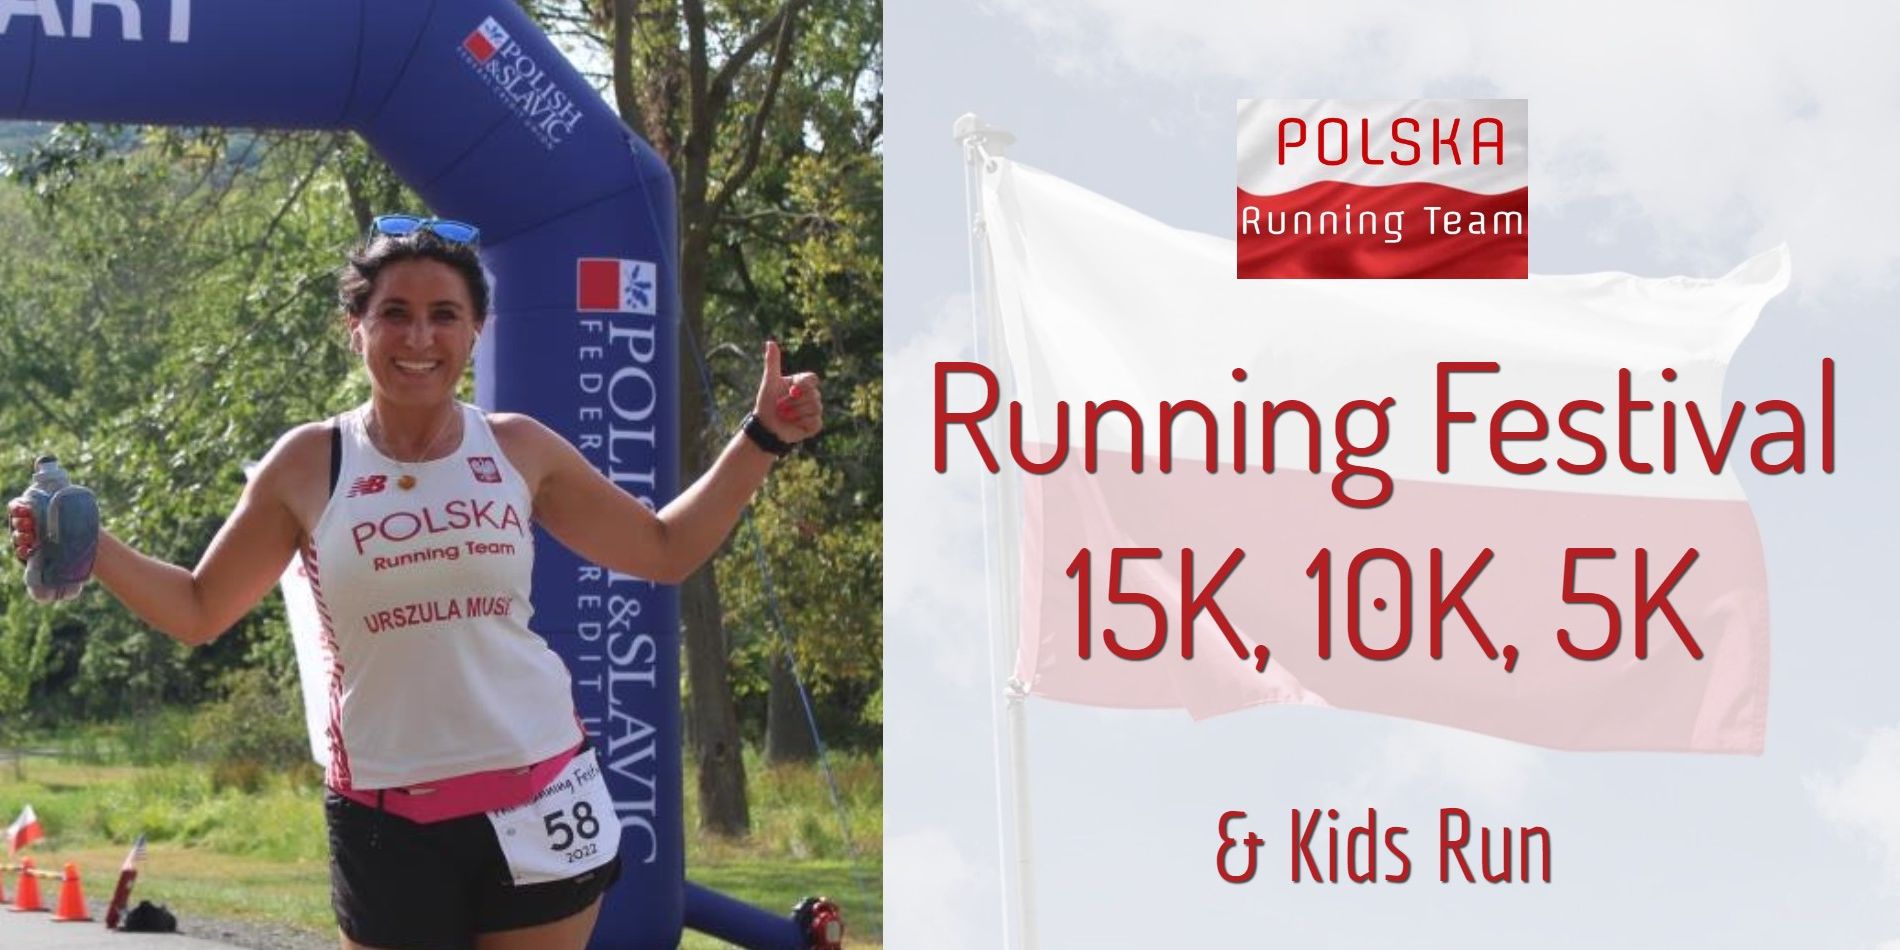 PRT Running Festival - 15K, 10K, 5K Run/Walk & Kids Run promotional image